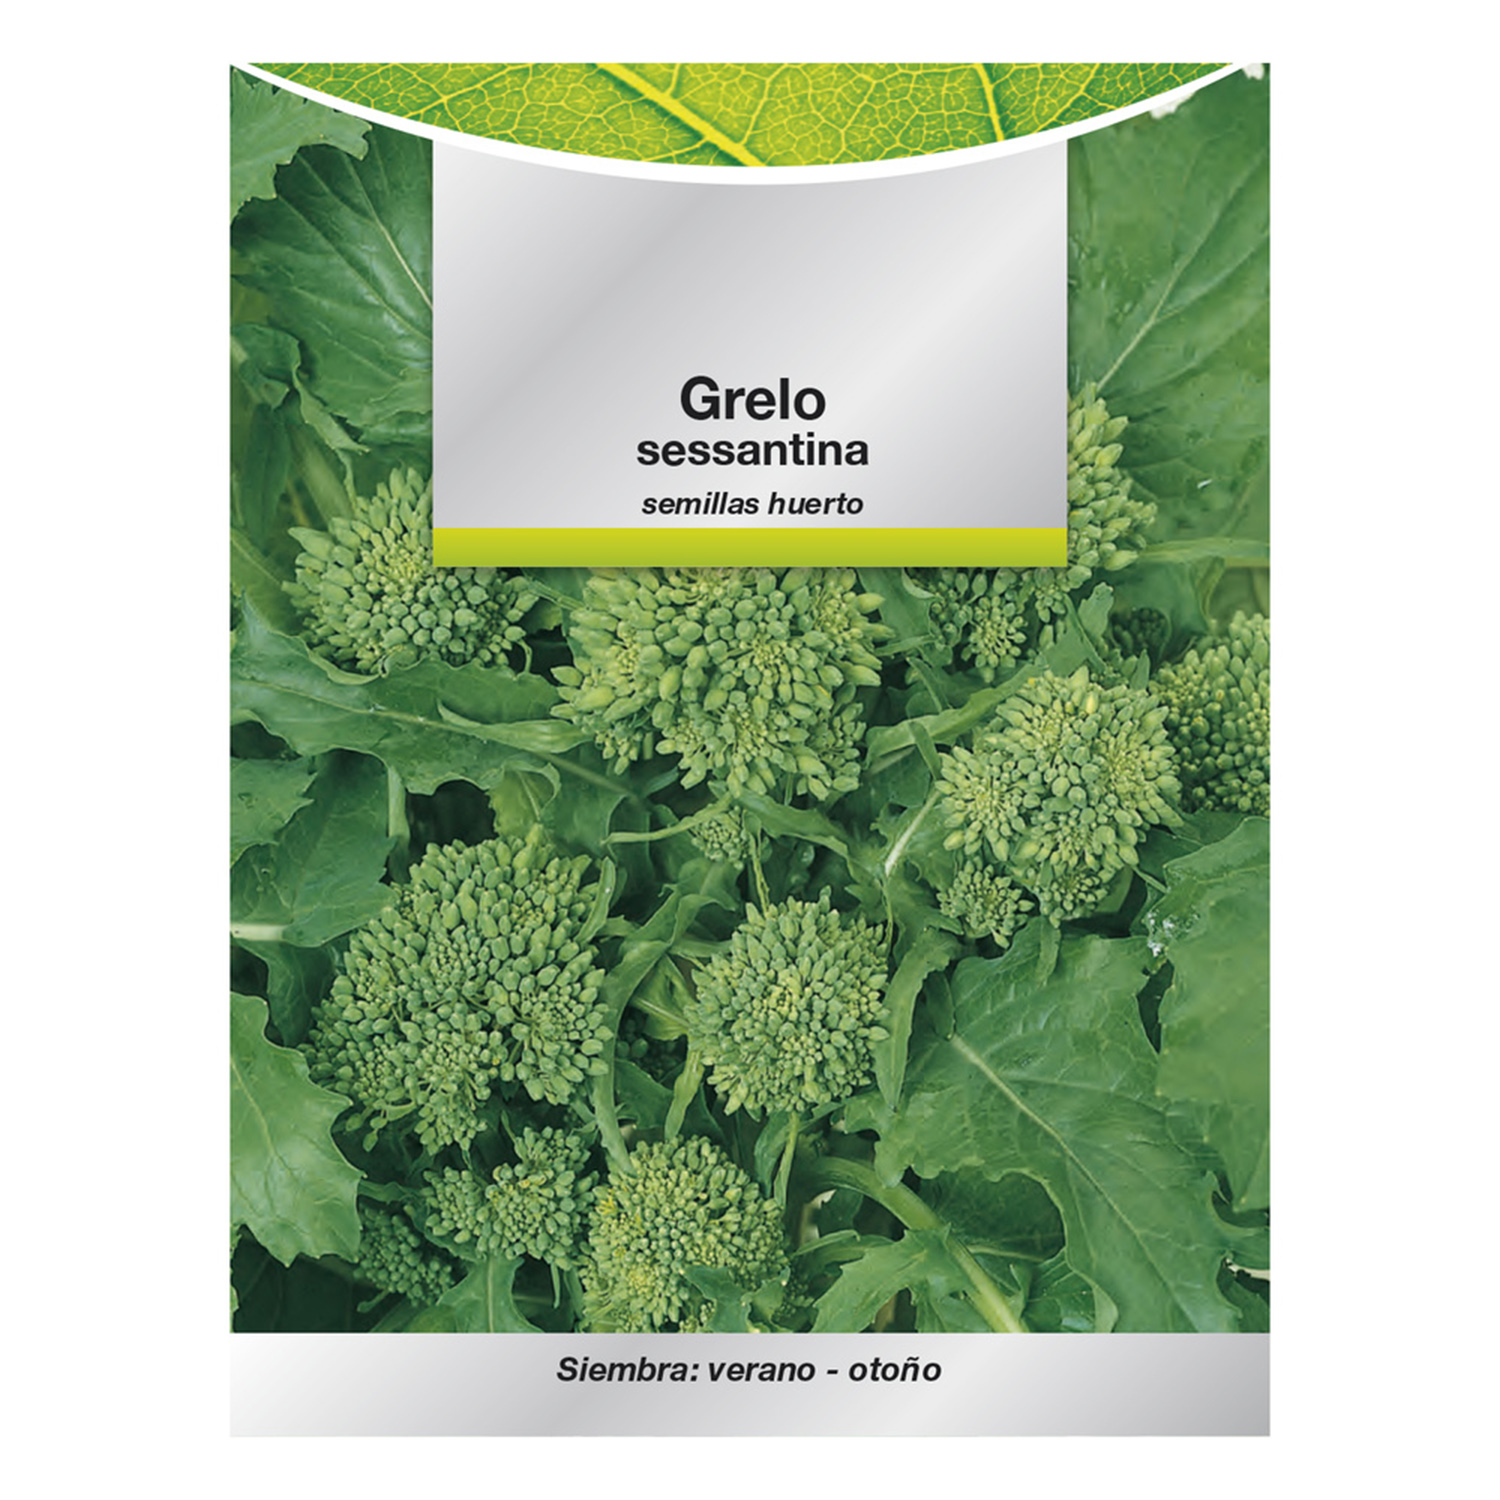 Semillas Grelo Brocoli (10 gramos) Semillas Verduras, Horticultura, Horticola, Semillas Huerto.